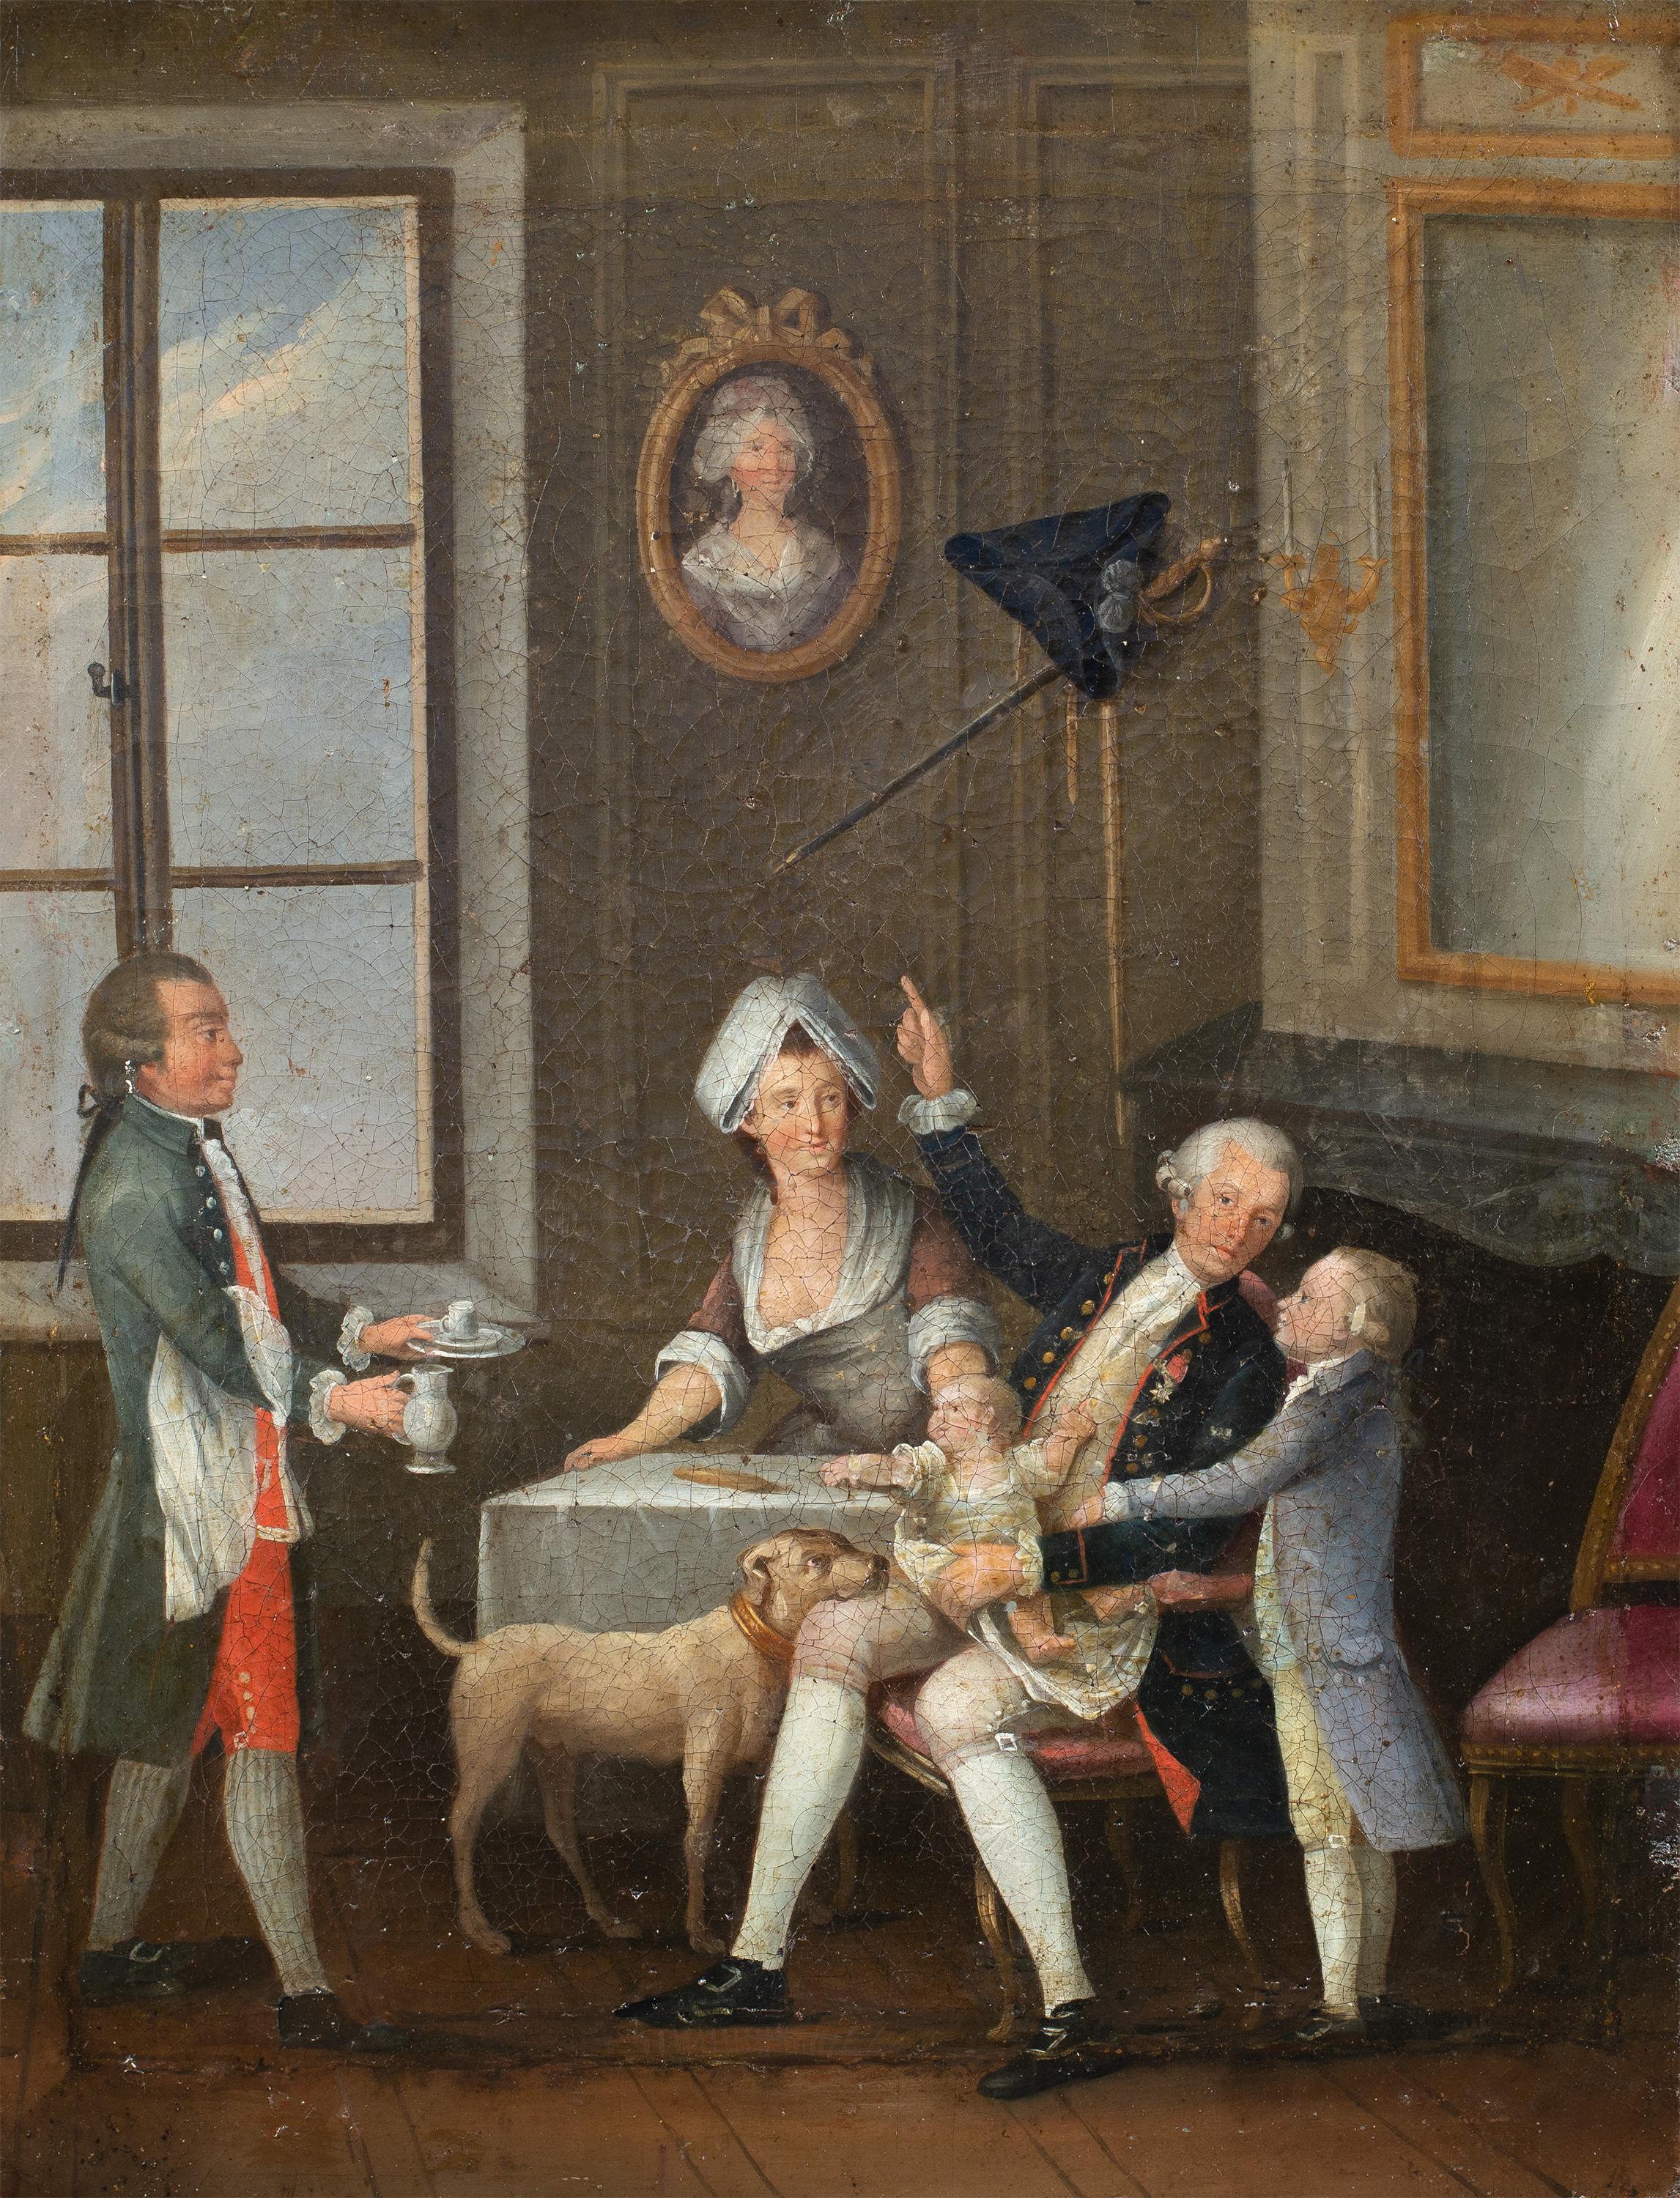 Französischer Rococò-Maler - 18. Jahrhundert Figurenmalerei - Frühstücksinterieur